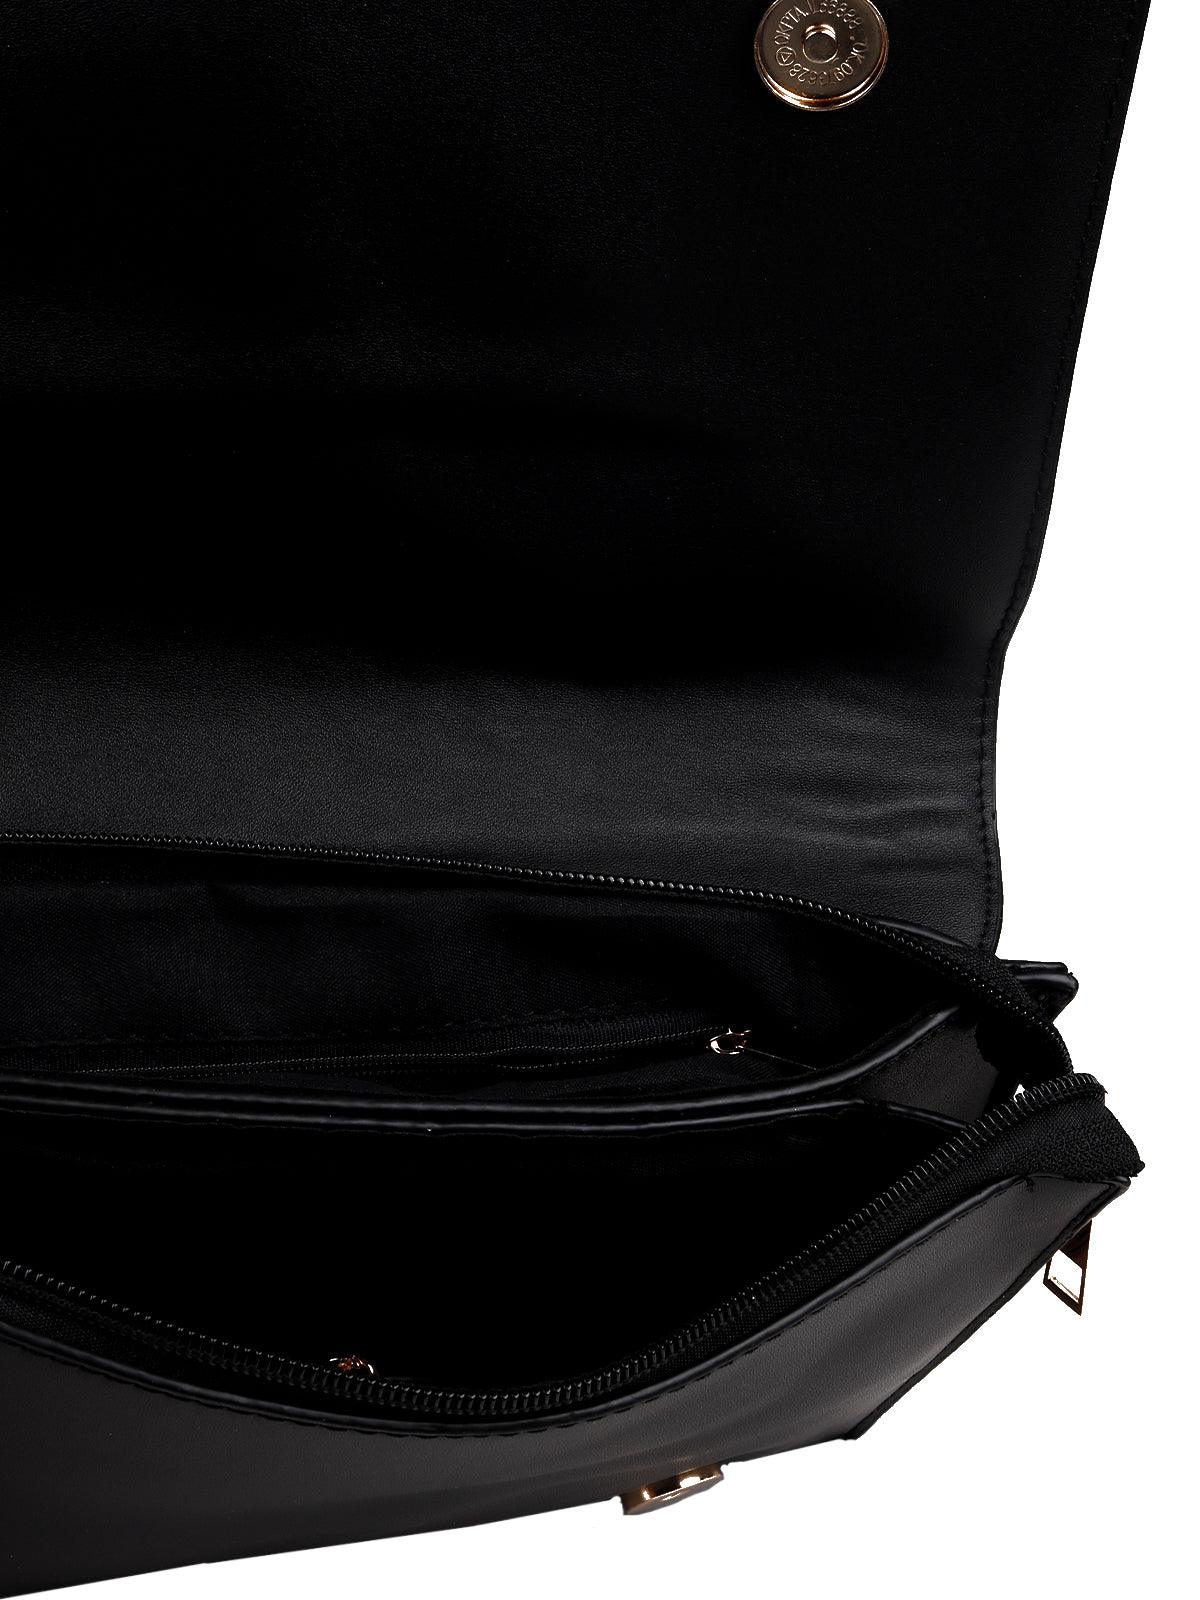 Shinning designer sling bag - Odette